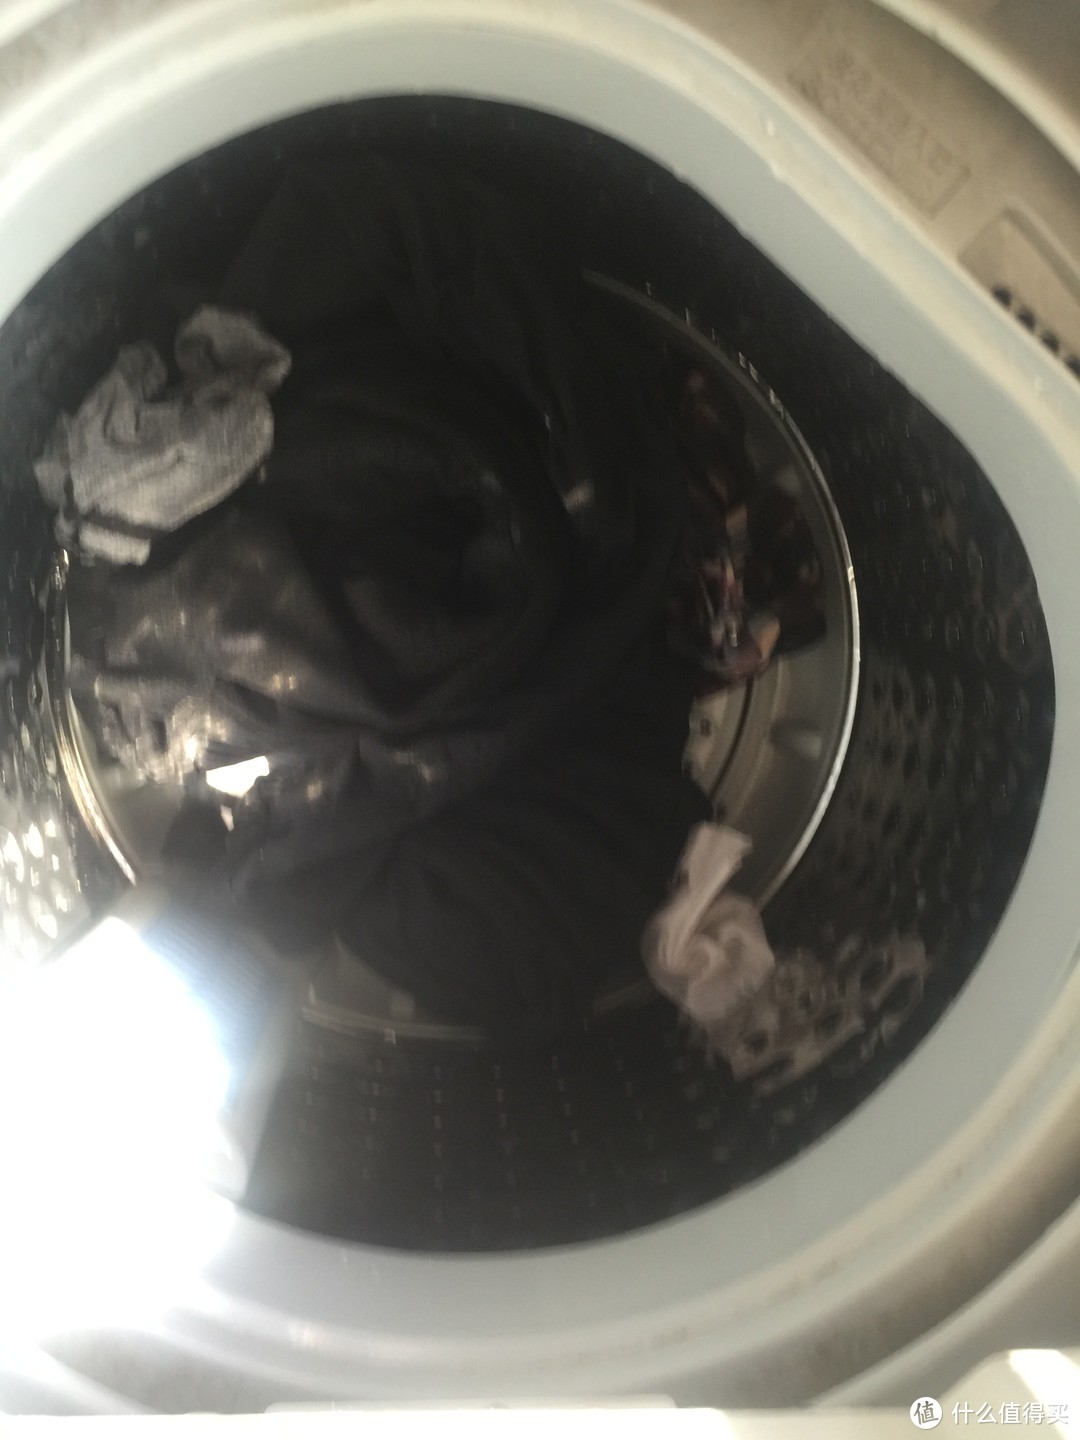 张大妈就让我这么爱上洗衣服٩(๑❛ᴗ❛๑)۶来自大洋彼岸的洗衣片！